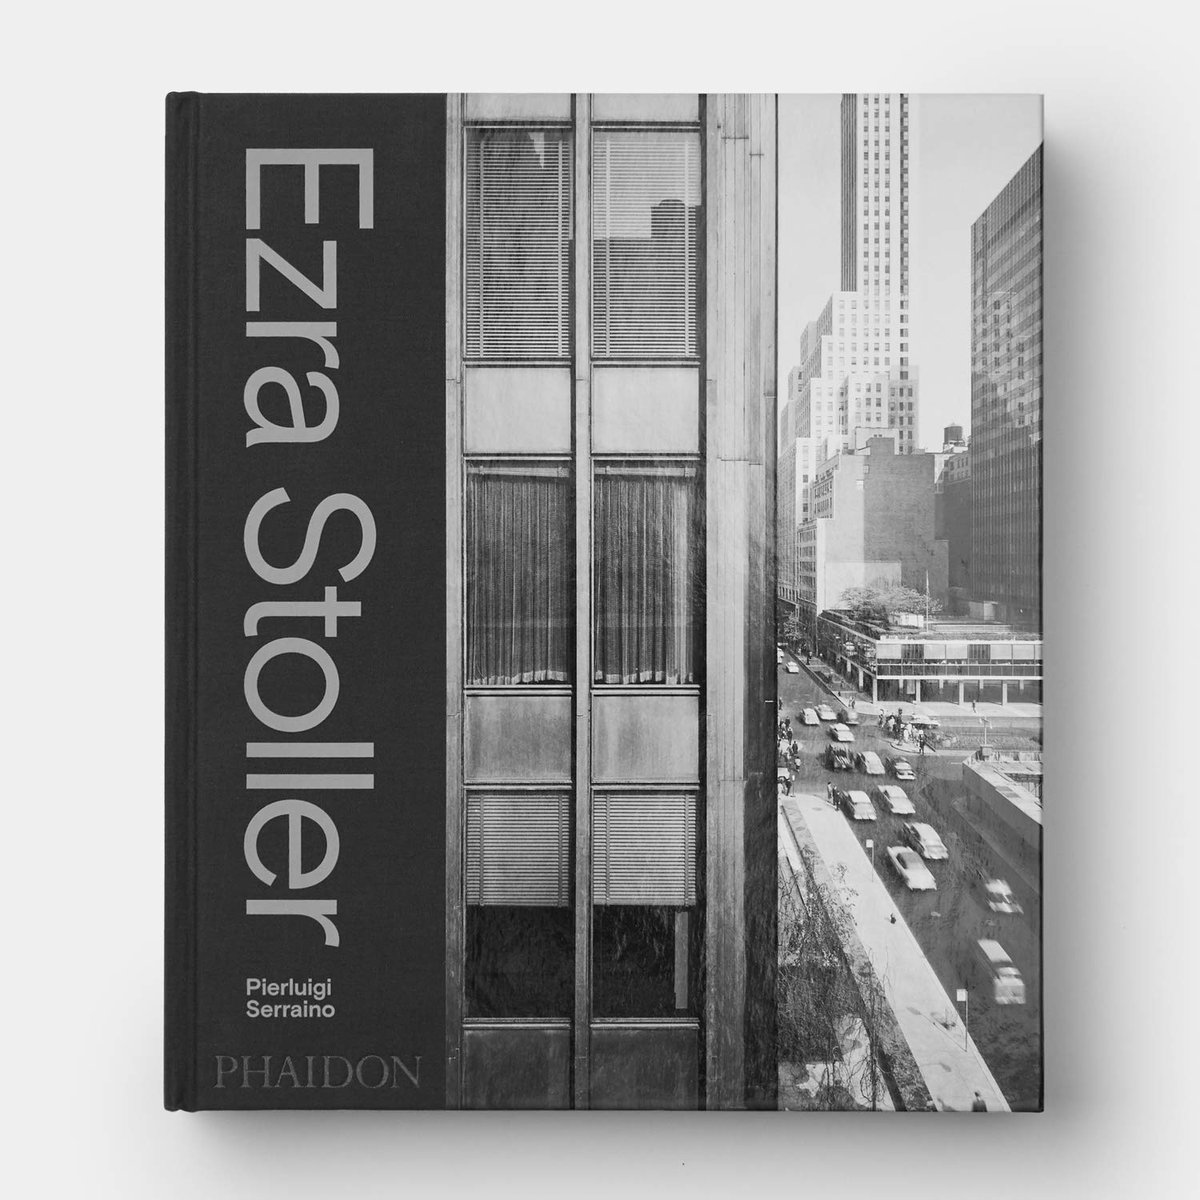 Puc presumir del meu regal d'aniversari pels 52 de part de la familia? Aquest llibre és una meravella, l'obra d' #EzraStoller presentada amb una cura exquisida #fotografia #arquitectura @EstoPhoto 📷